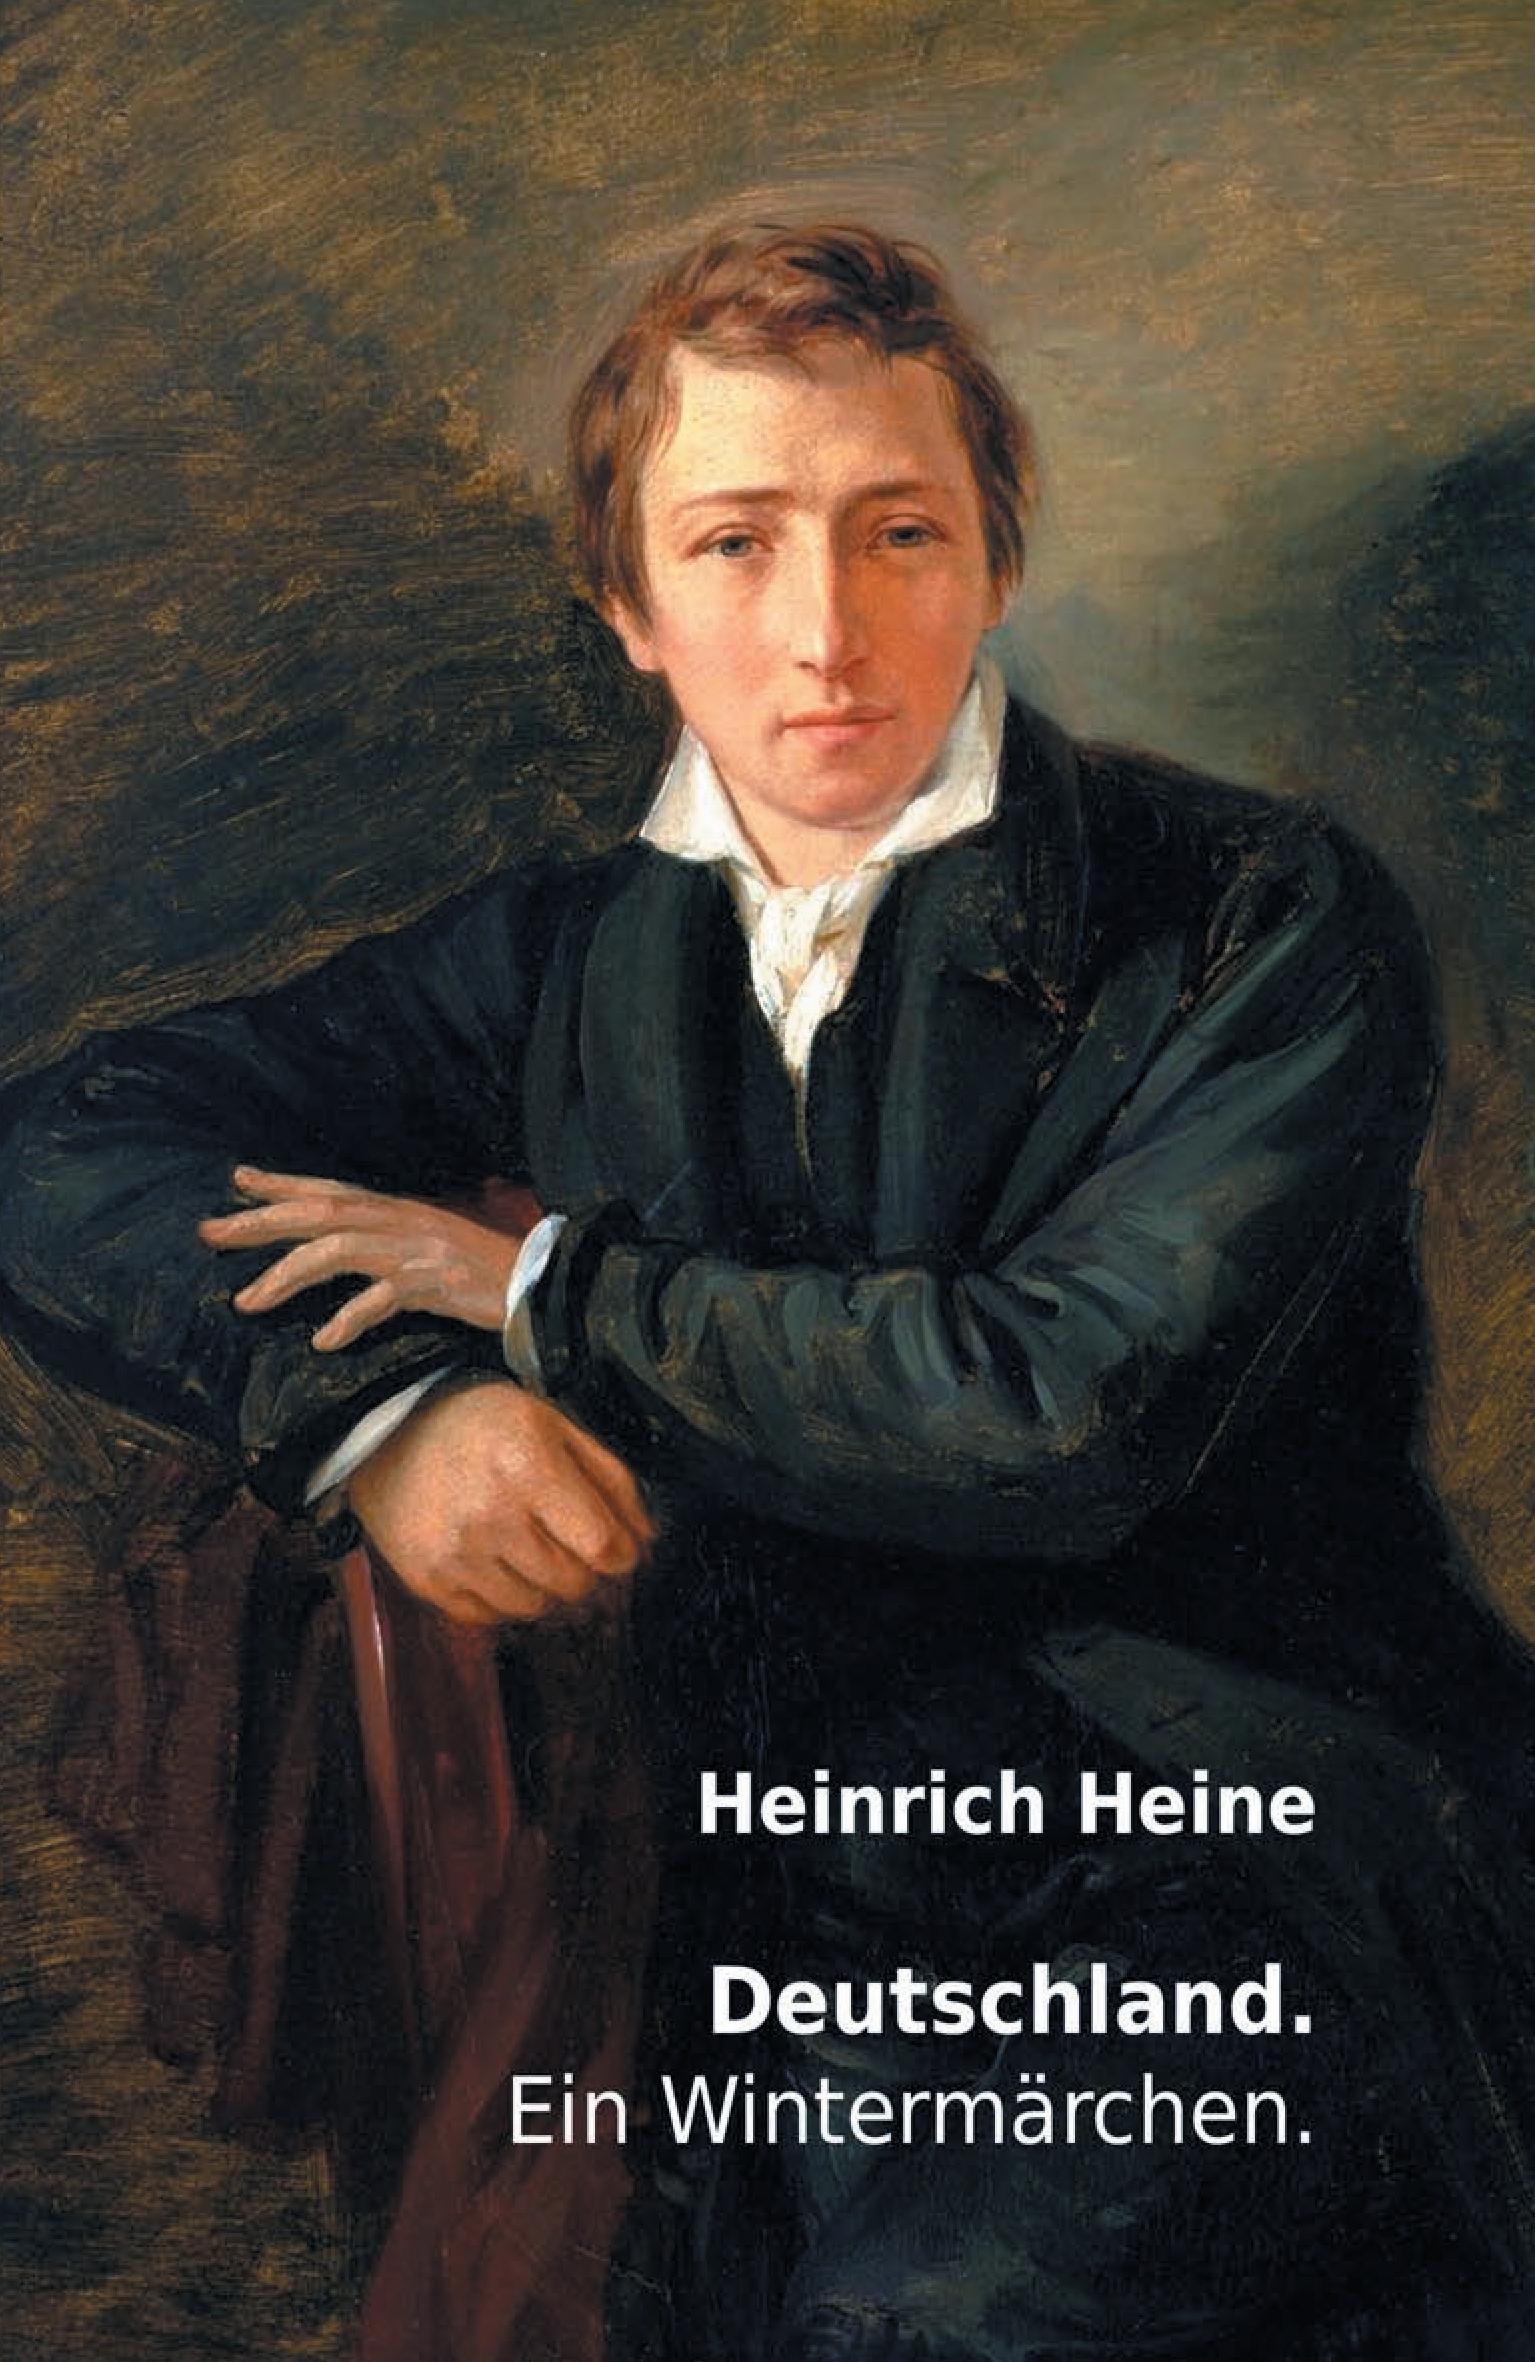 Deutschland. Ein Wintermärchen. | Heinrich Heine | Taschenbuch | Paperback | 100 S. | Deutsch | 2015 | nexx verlag | EAN 9783958704121 - Heine, Heinrich